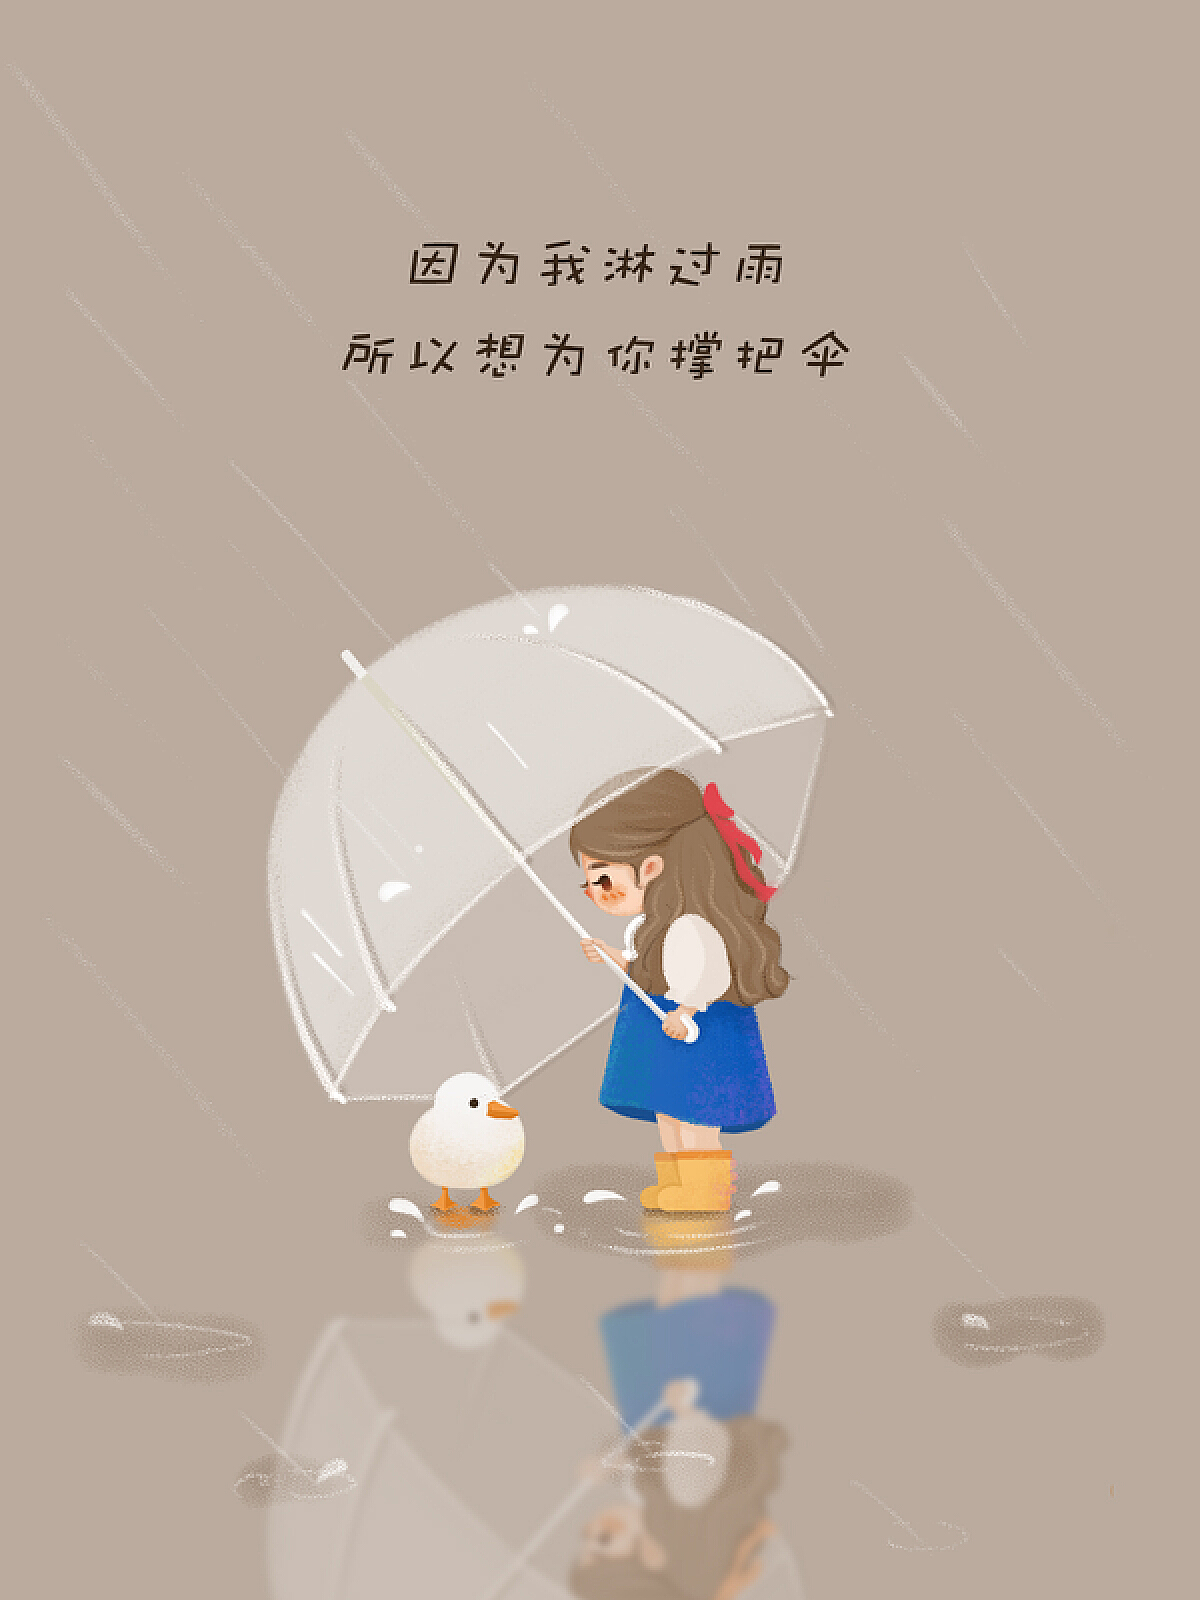 情侣雨中一把伞图片,雨中牵手的图片 - 伤感说说吧